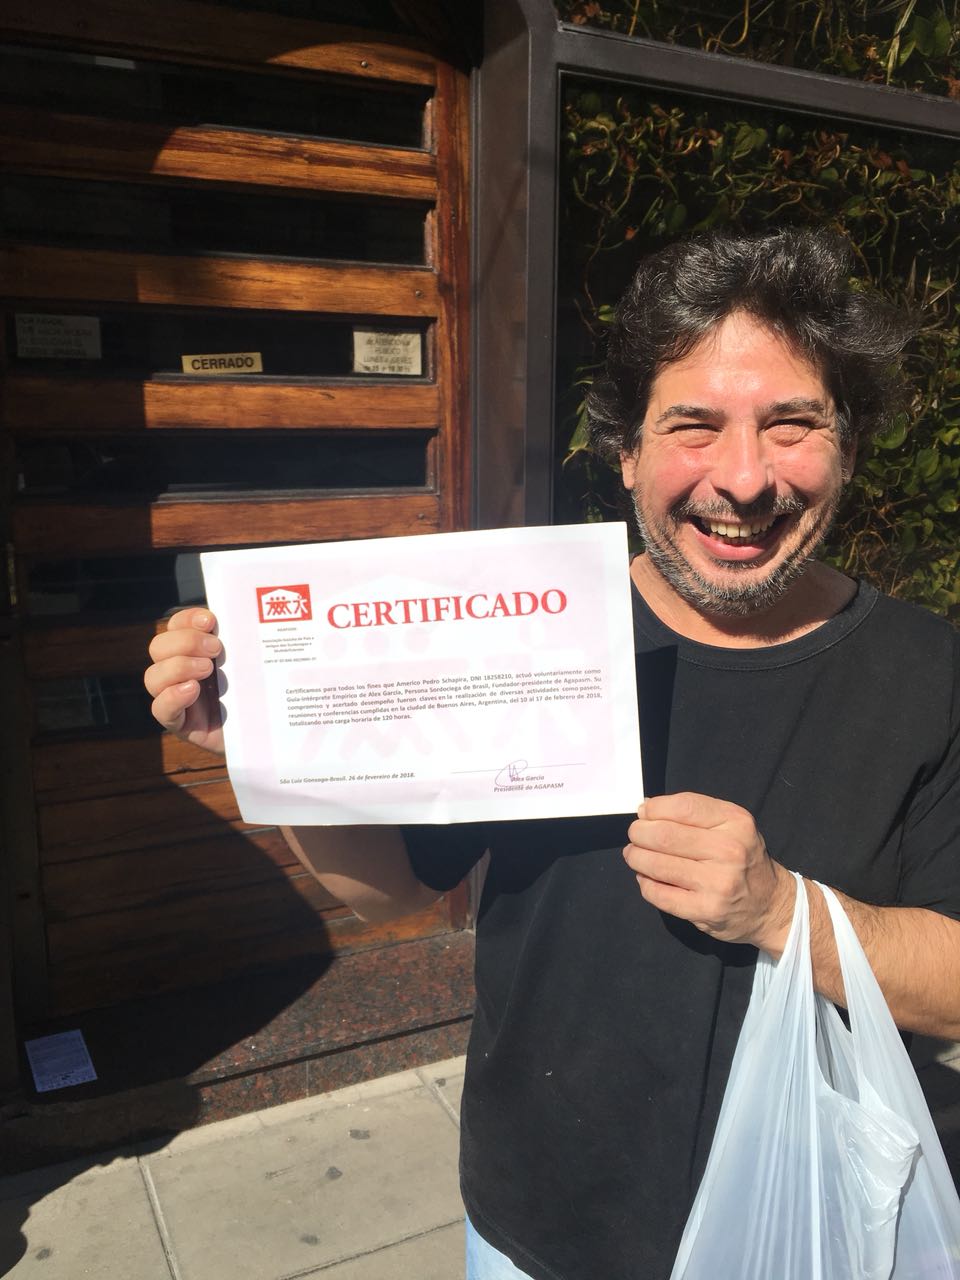 Imagem de um homem sorrindo exibindo um certificado